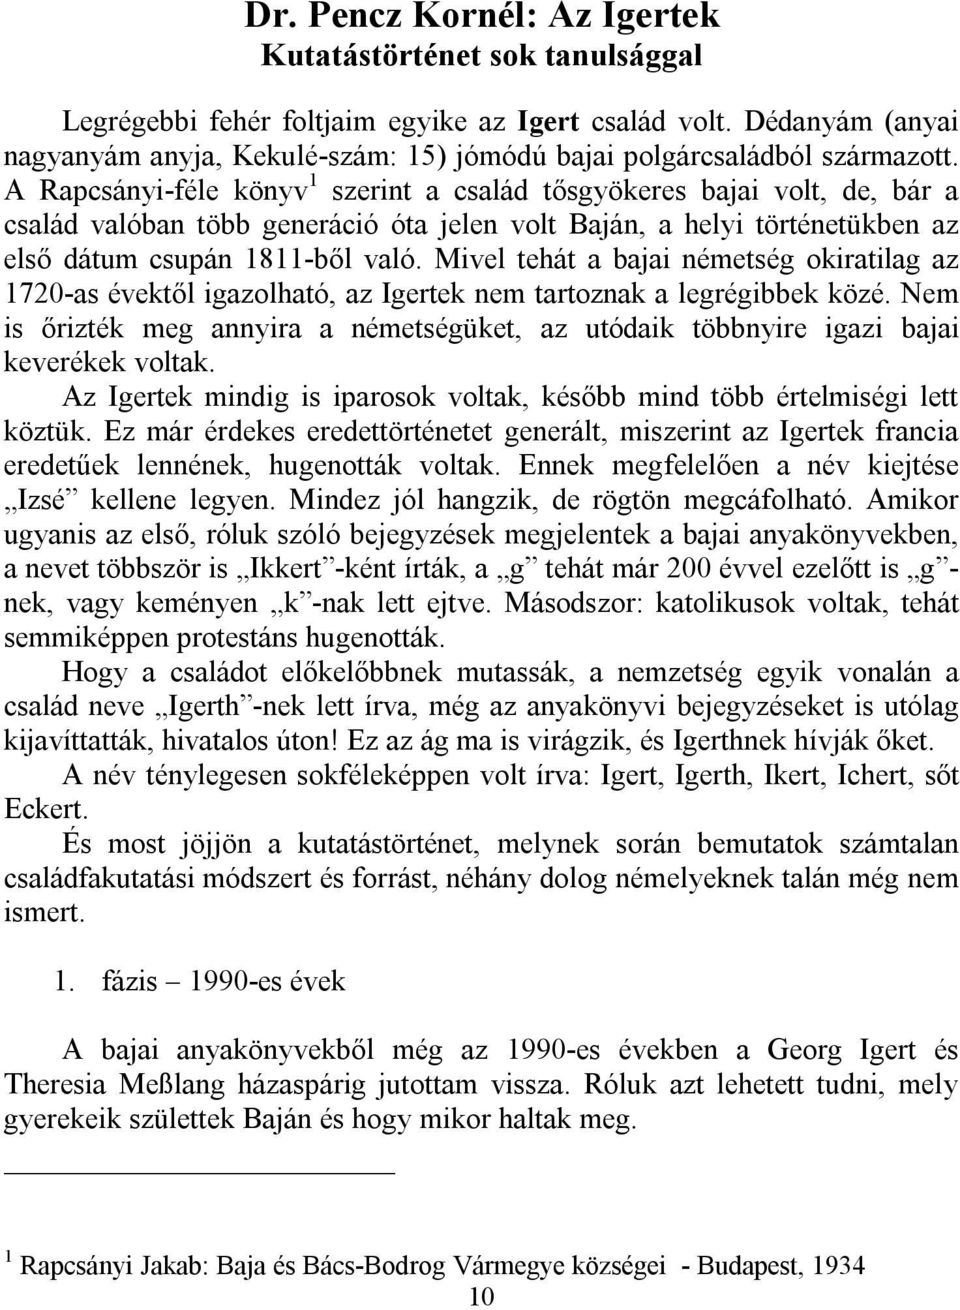 A Rapcsányi-féle könyv 1 szerint a család tősgyökeres bajai volt, de, bár a család valóban több generáció óta jelen volt Baján, a helyi történetükben az első dátum csupán 1811-ből való.